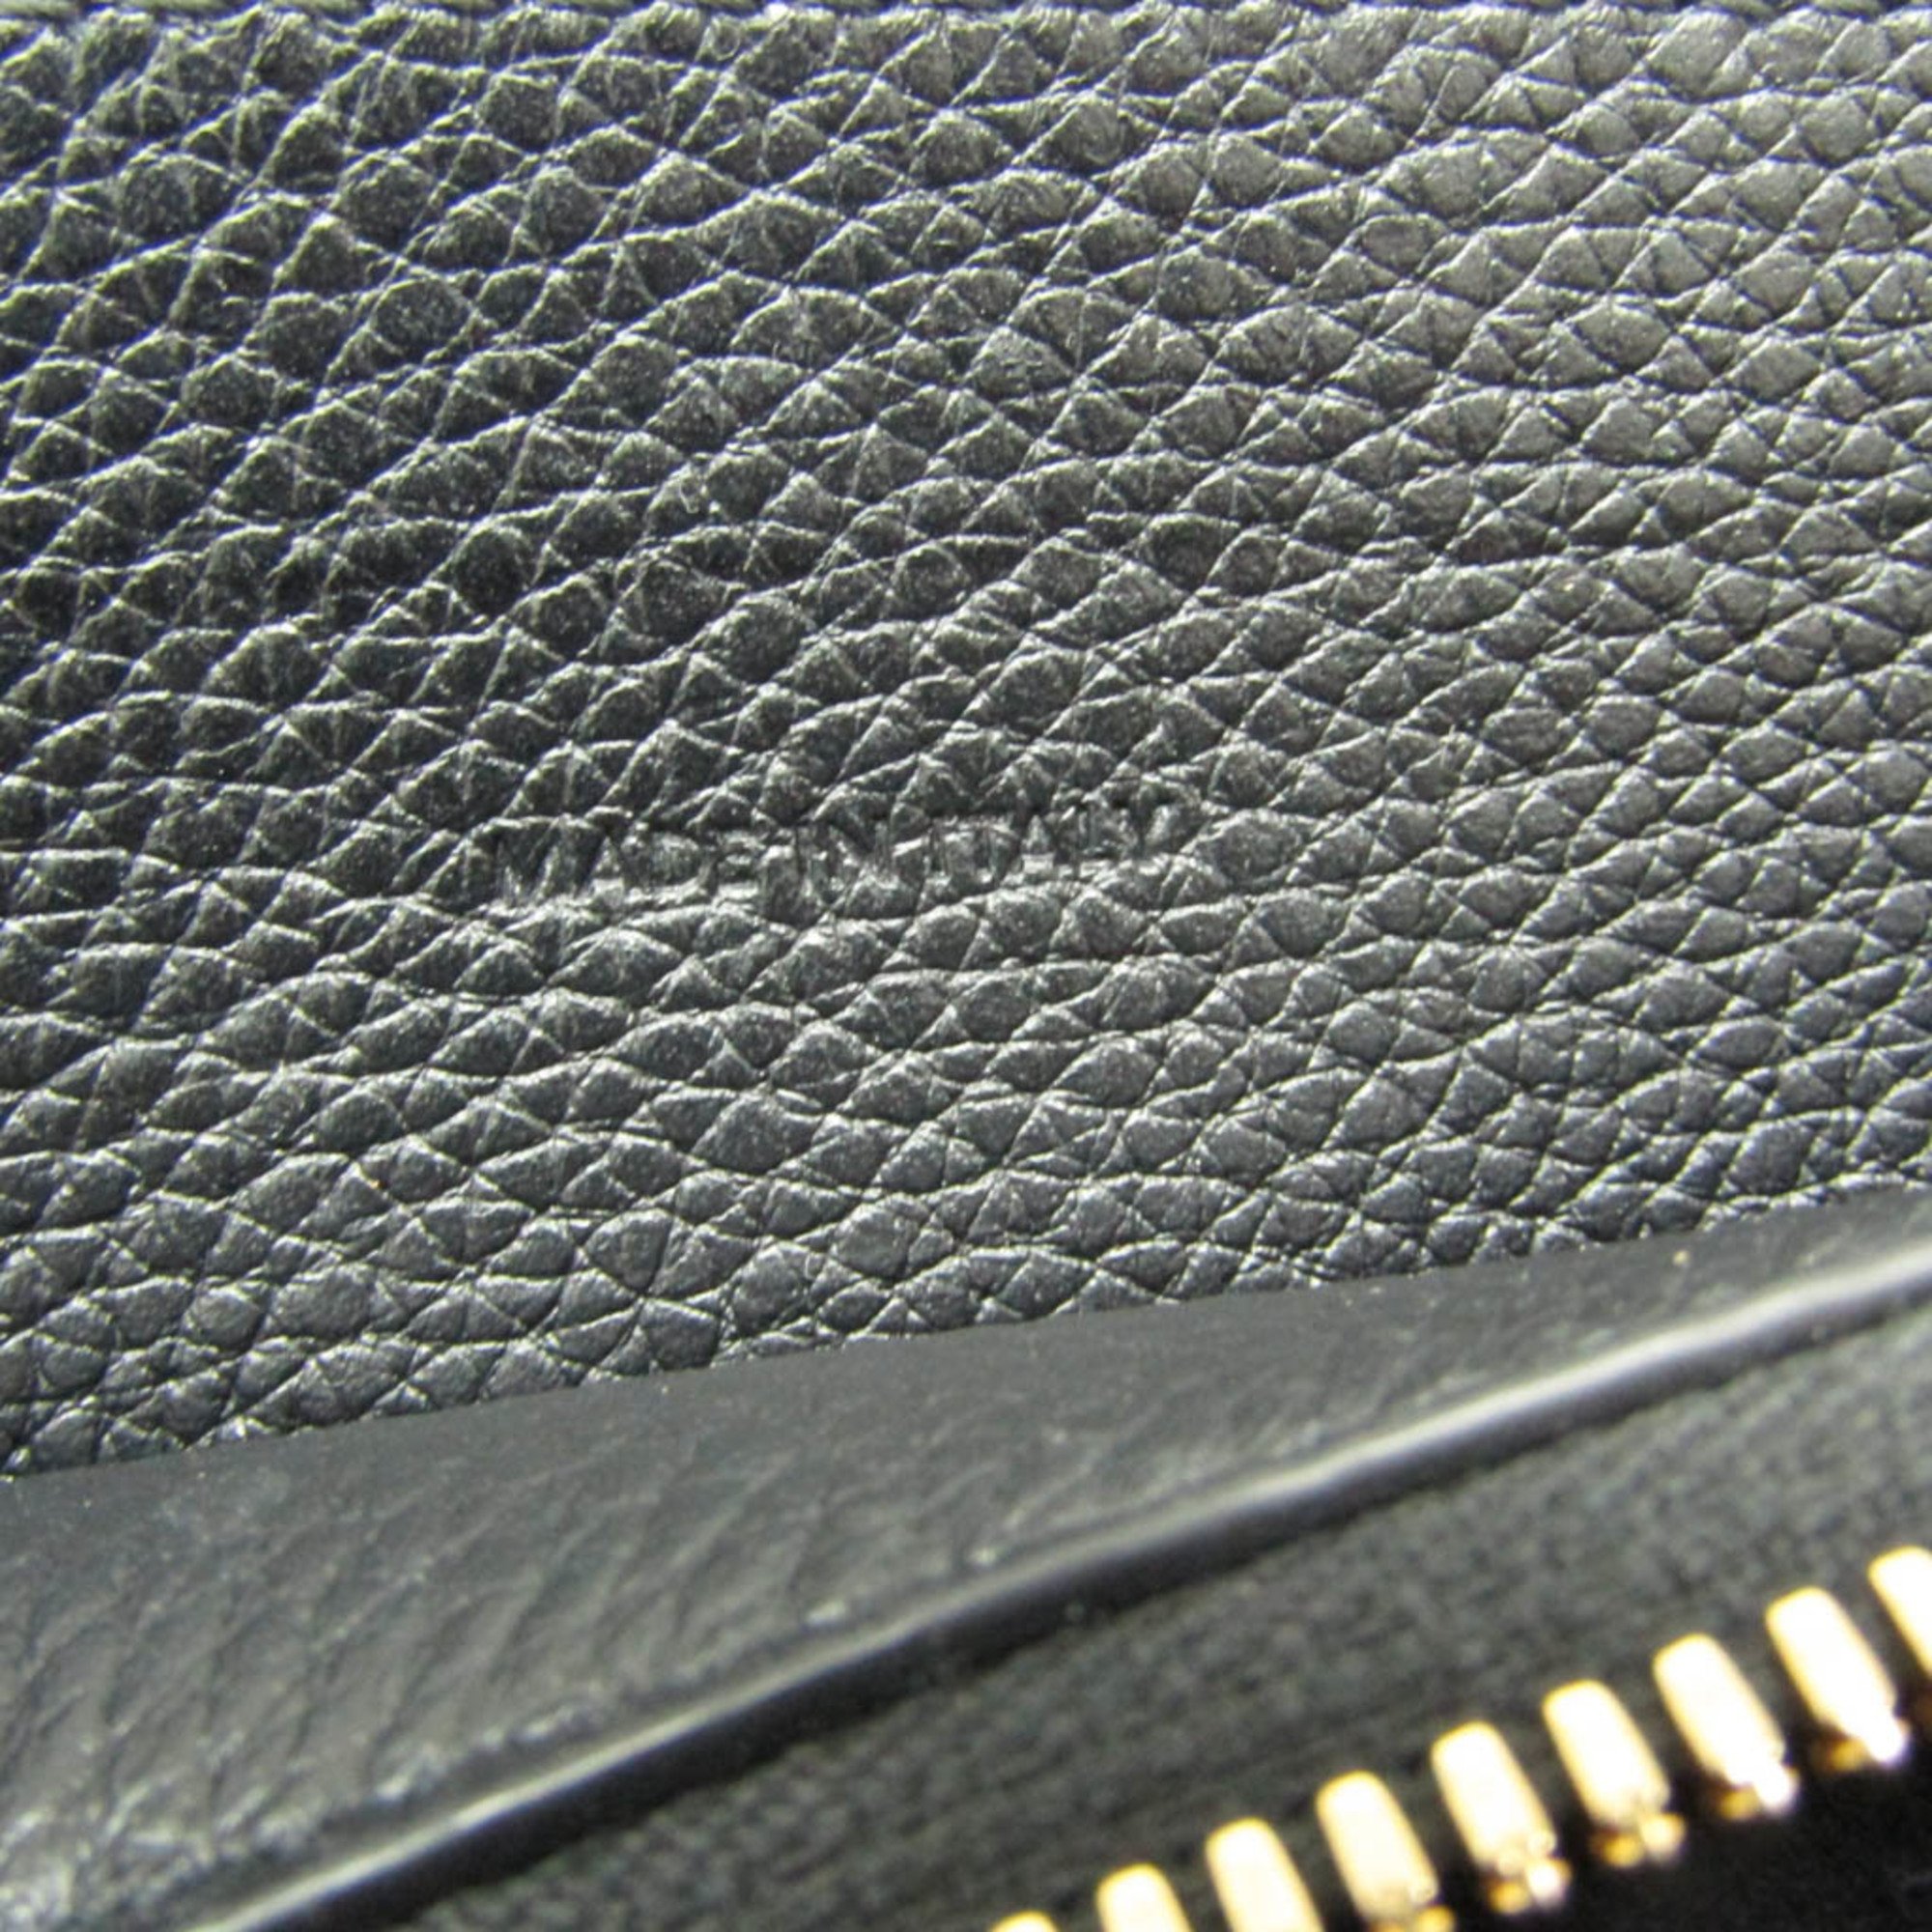 Celine Cabas De France Medium Women's Leather Handbag,Shoulder Bag Black